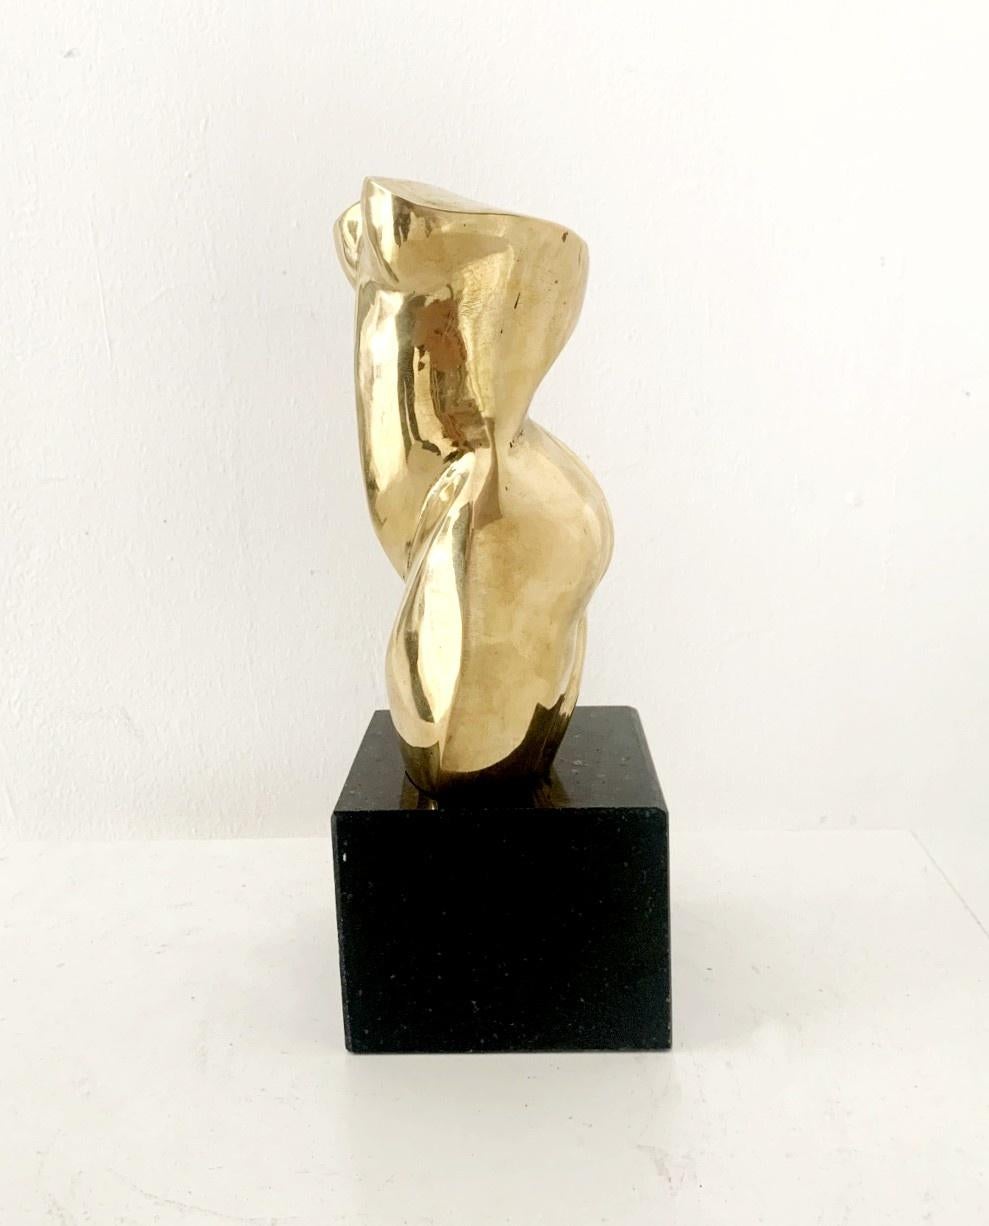 Akt - 21. Jahrhundert, Zeitgenössische figurative Skulptur aus Messing, Polnische Kunst (Beige), Figurative Sculpture, von Ryszard Piotrowski